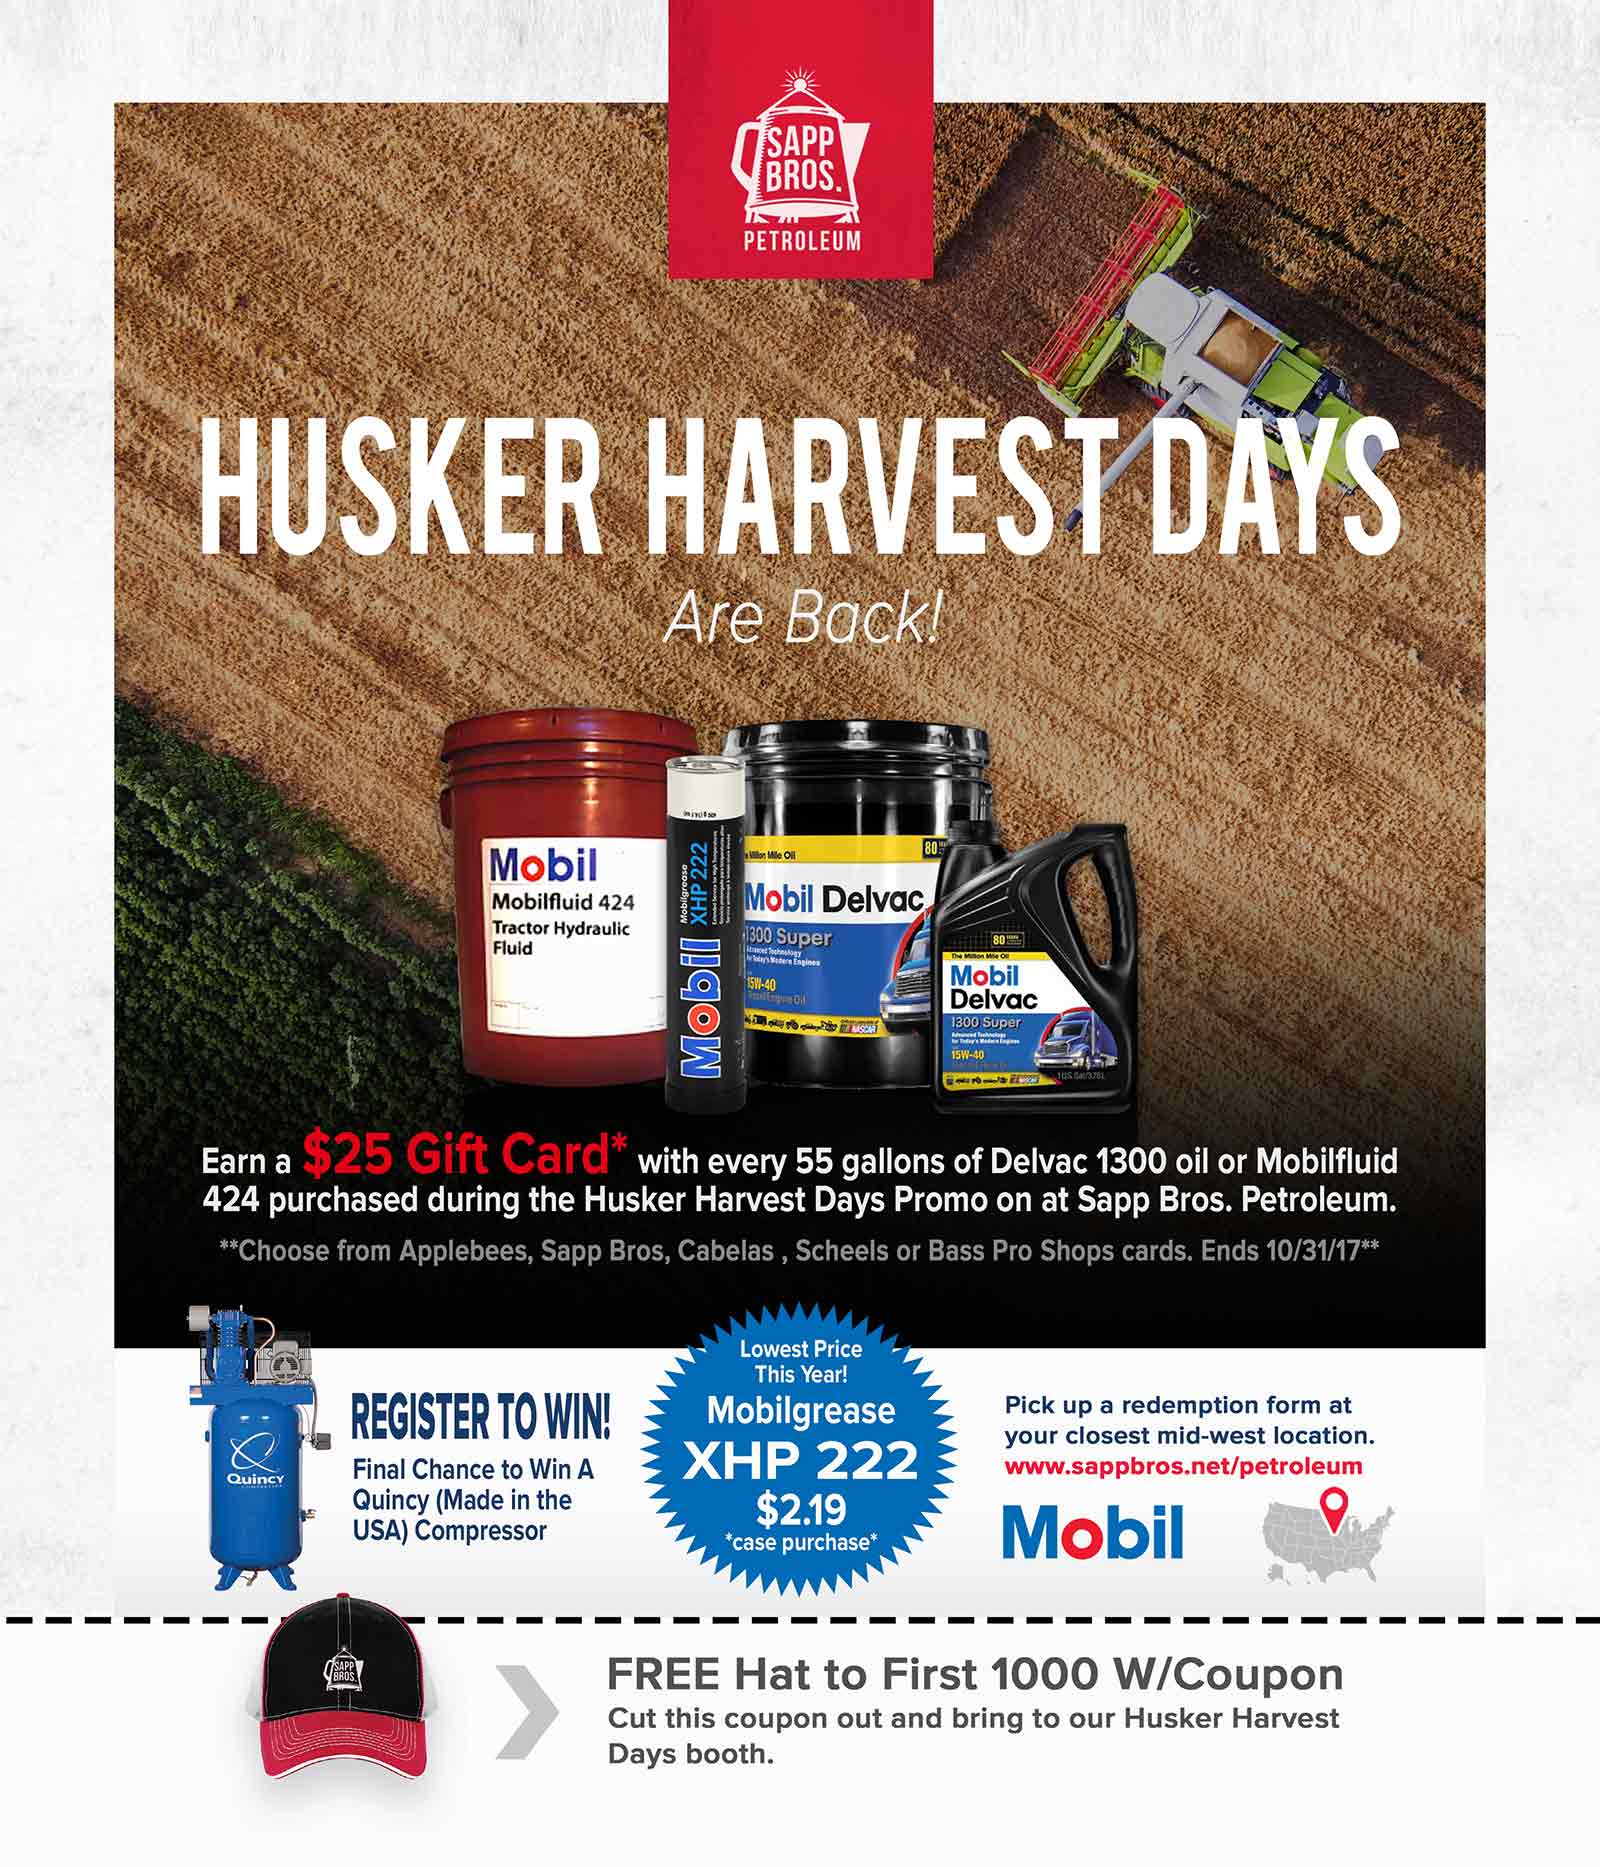 Husker Harvest Days Are Back!